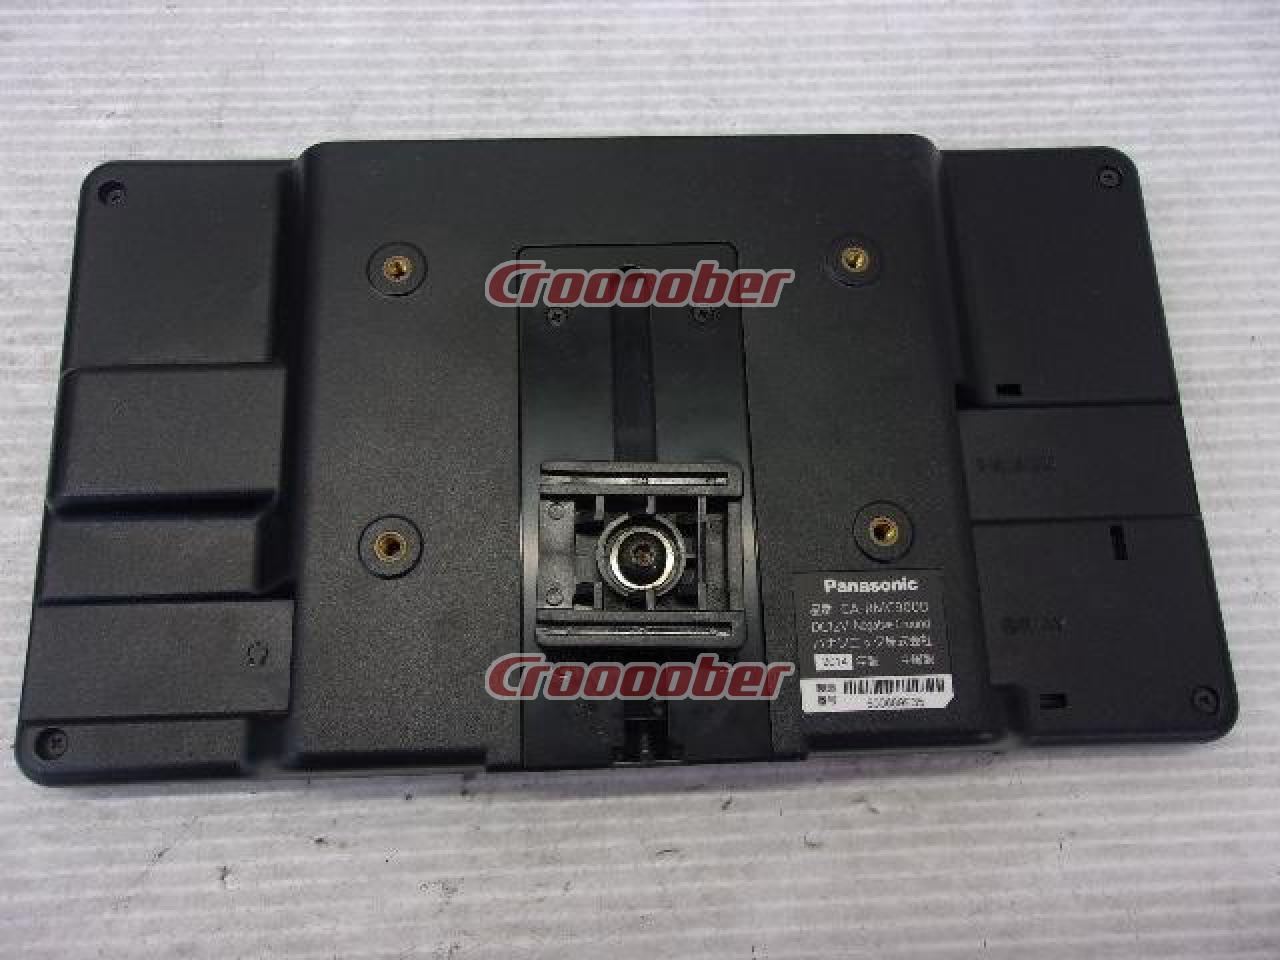 Panasonic CA-RMC900D リアシートを見守るリアモニター(カメラ付き